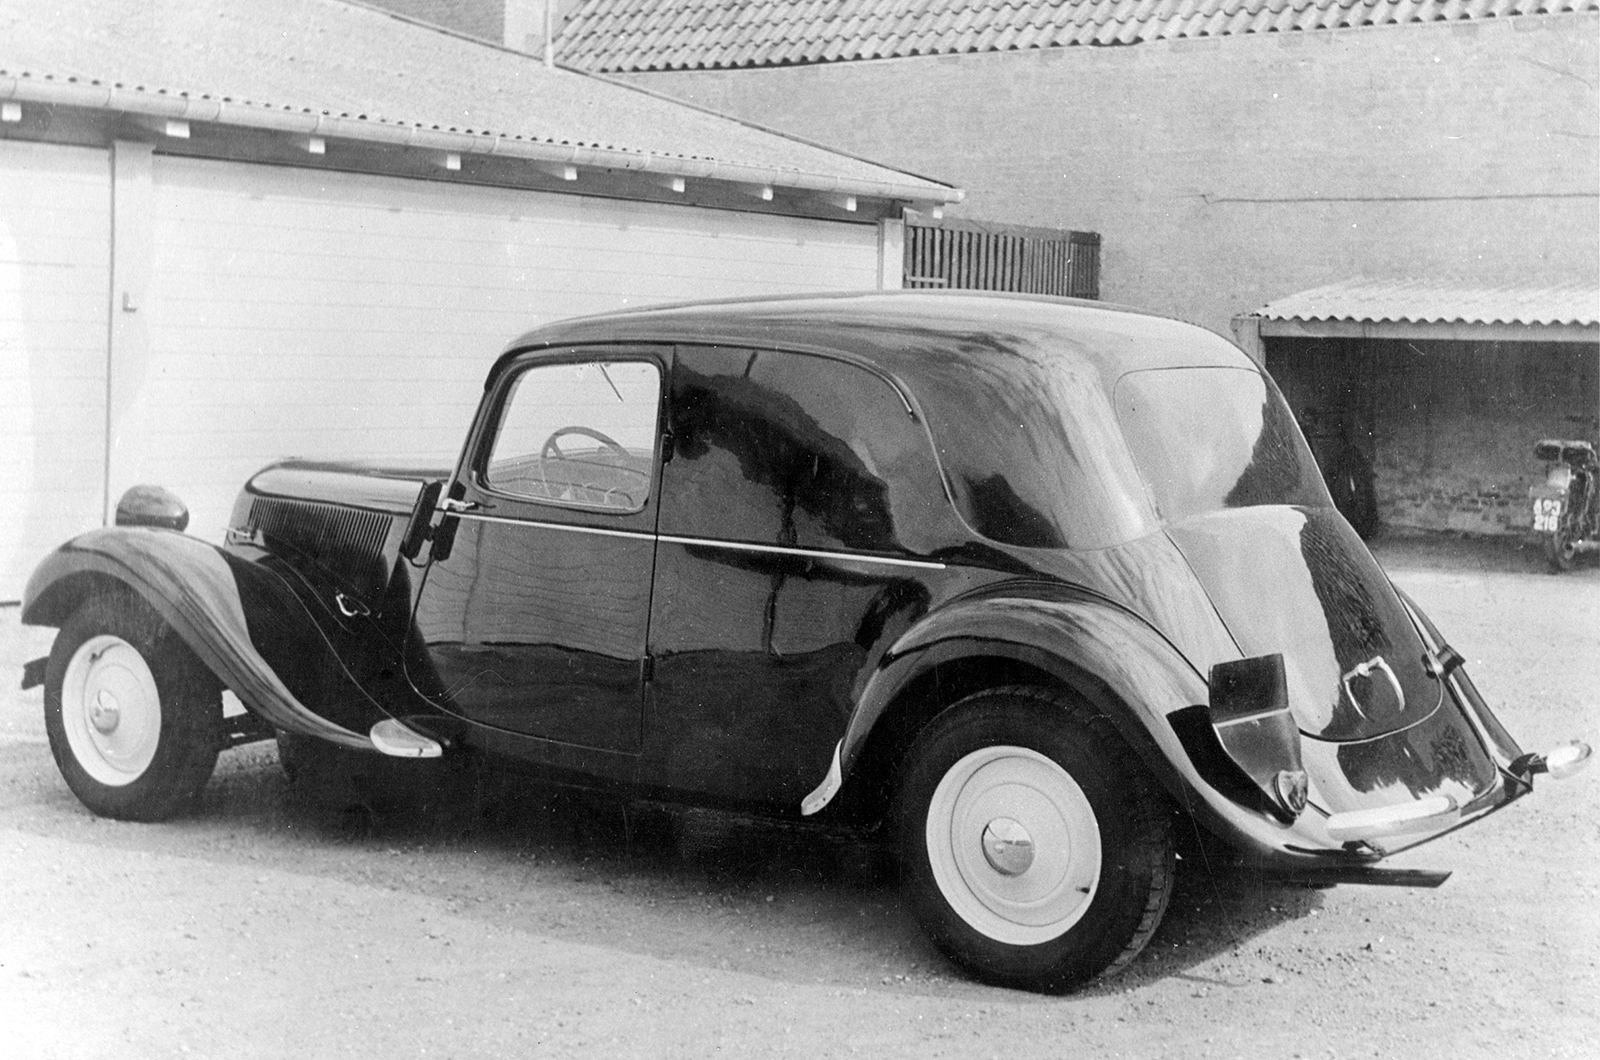 Classic & Sports Car – Citroën Traction Avant camionnette: van extraordinaire